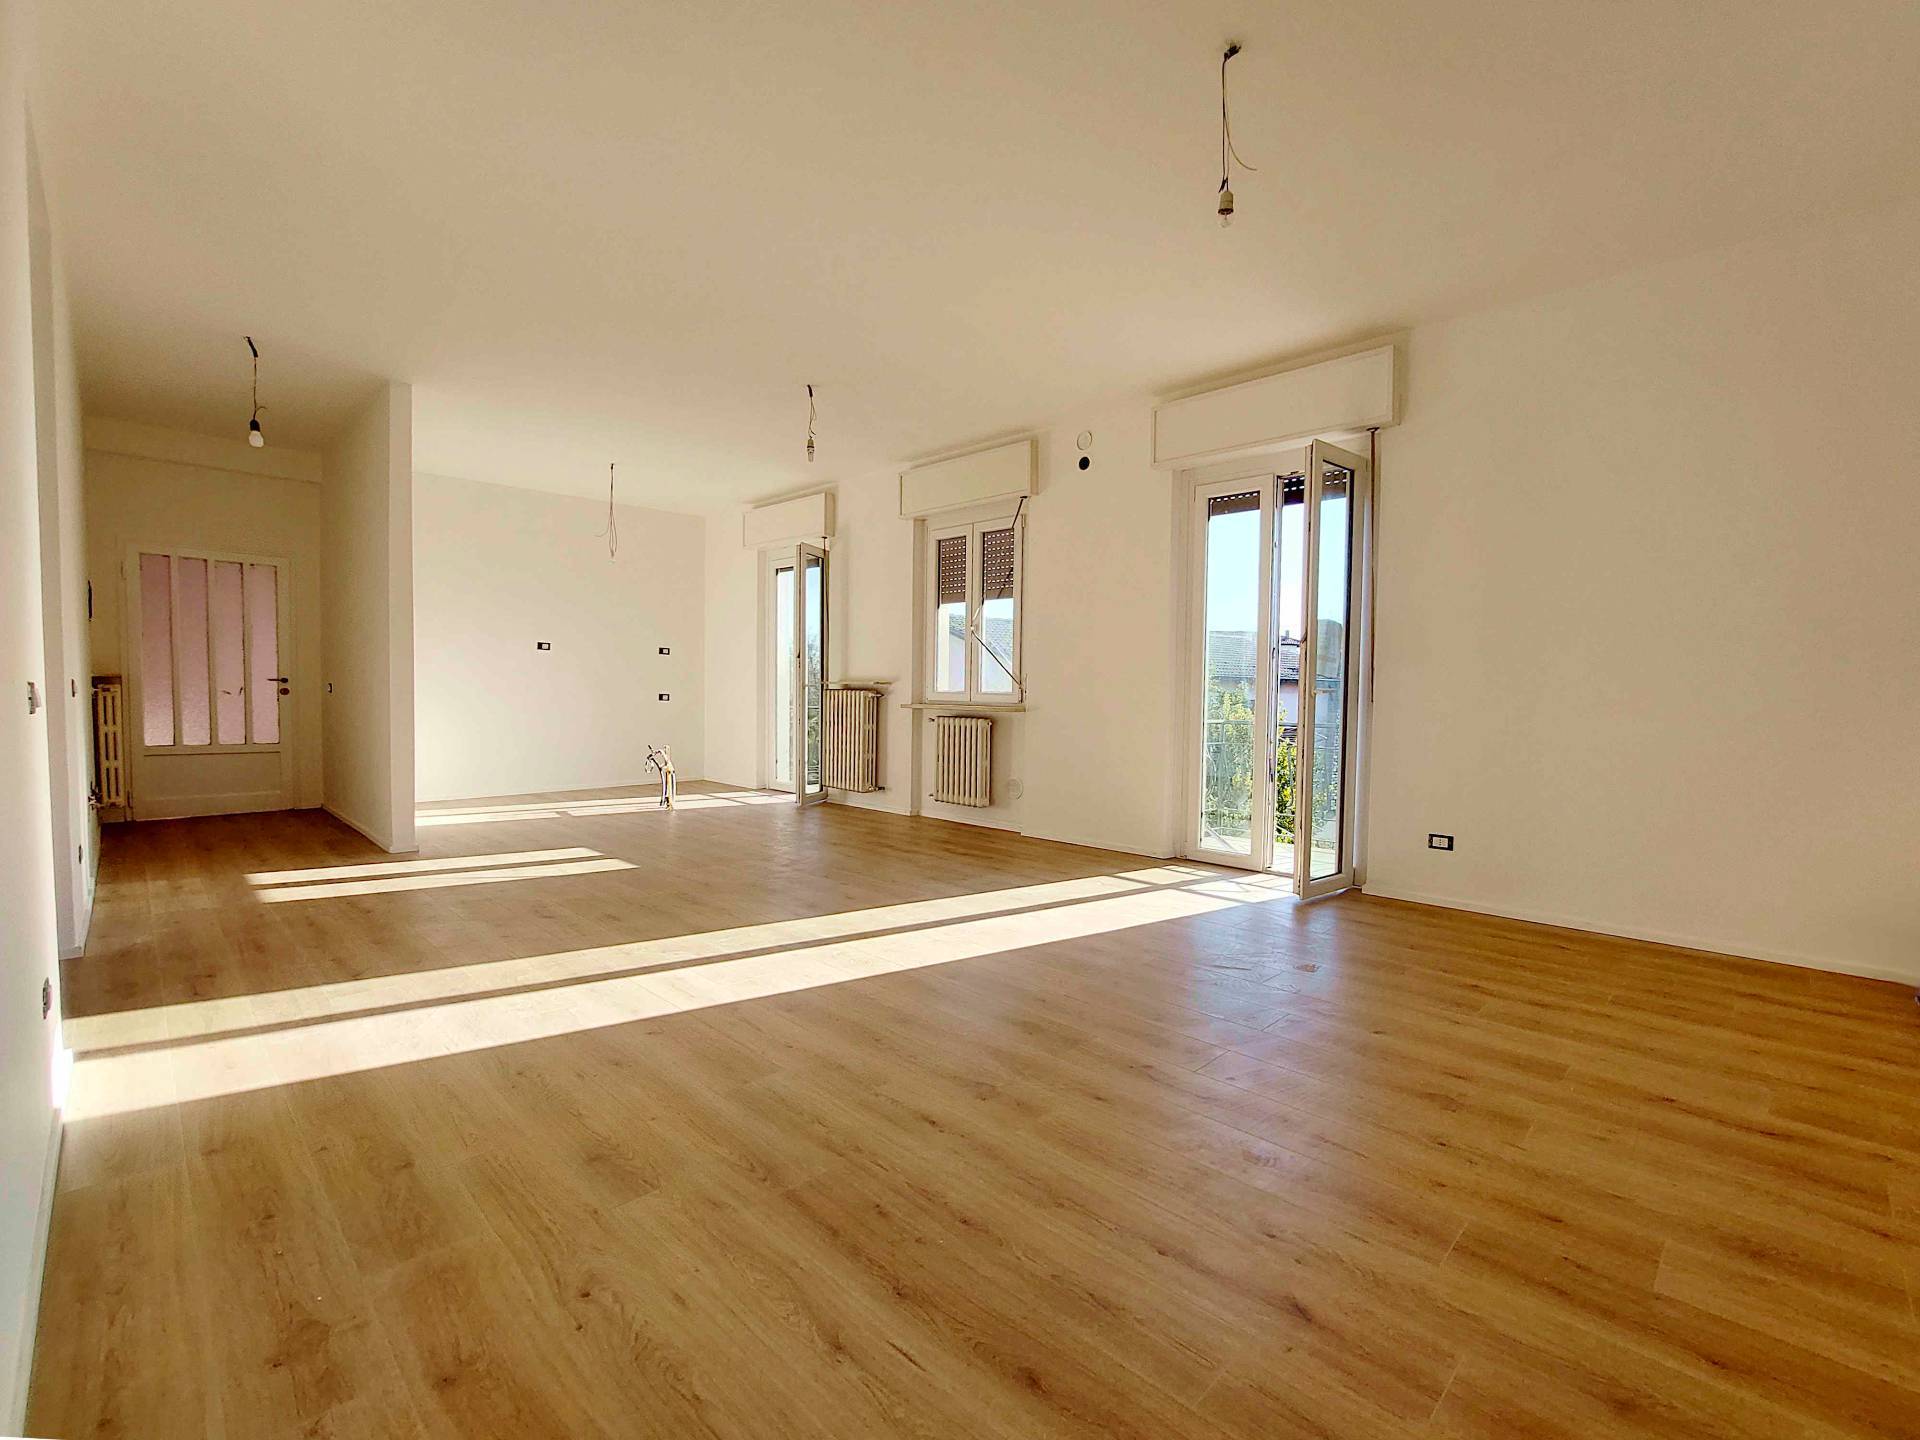 Appartamento in vendita a Sumirago, 3 locali, prezzo € 139.000 | PortaleAgenzieImmobiliari.it